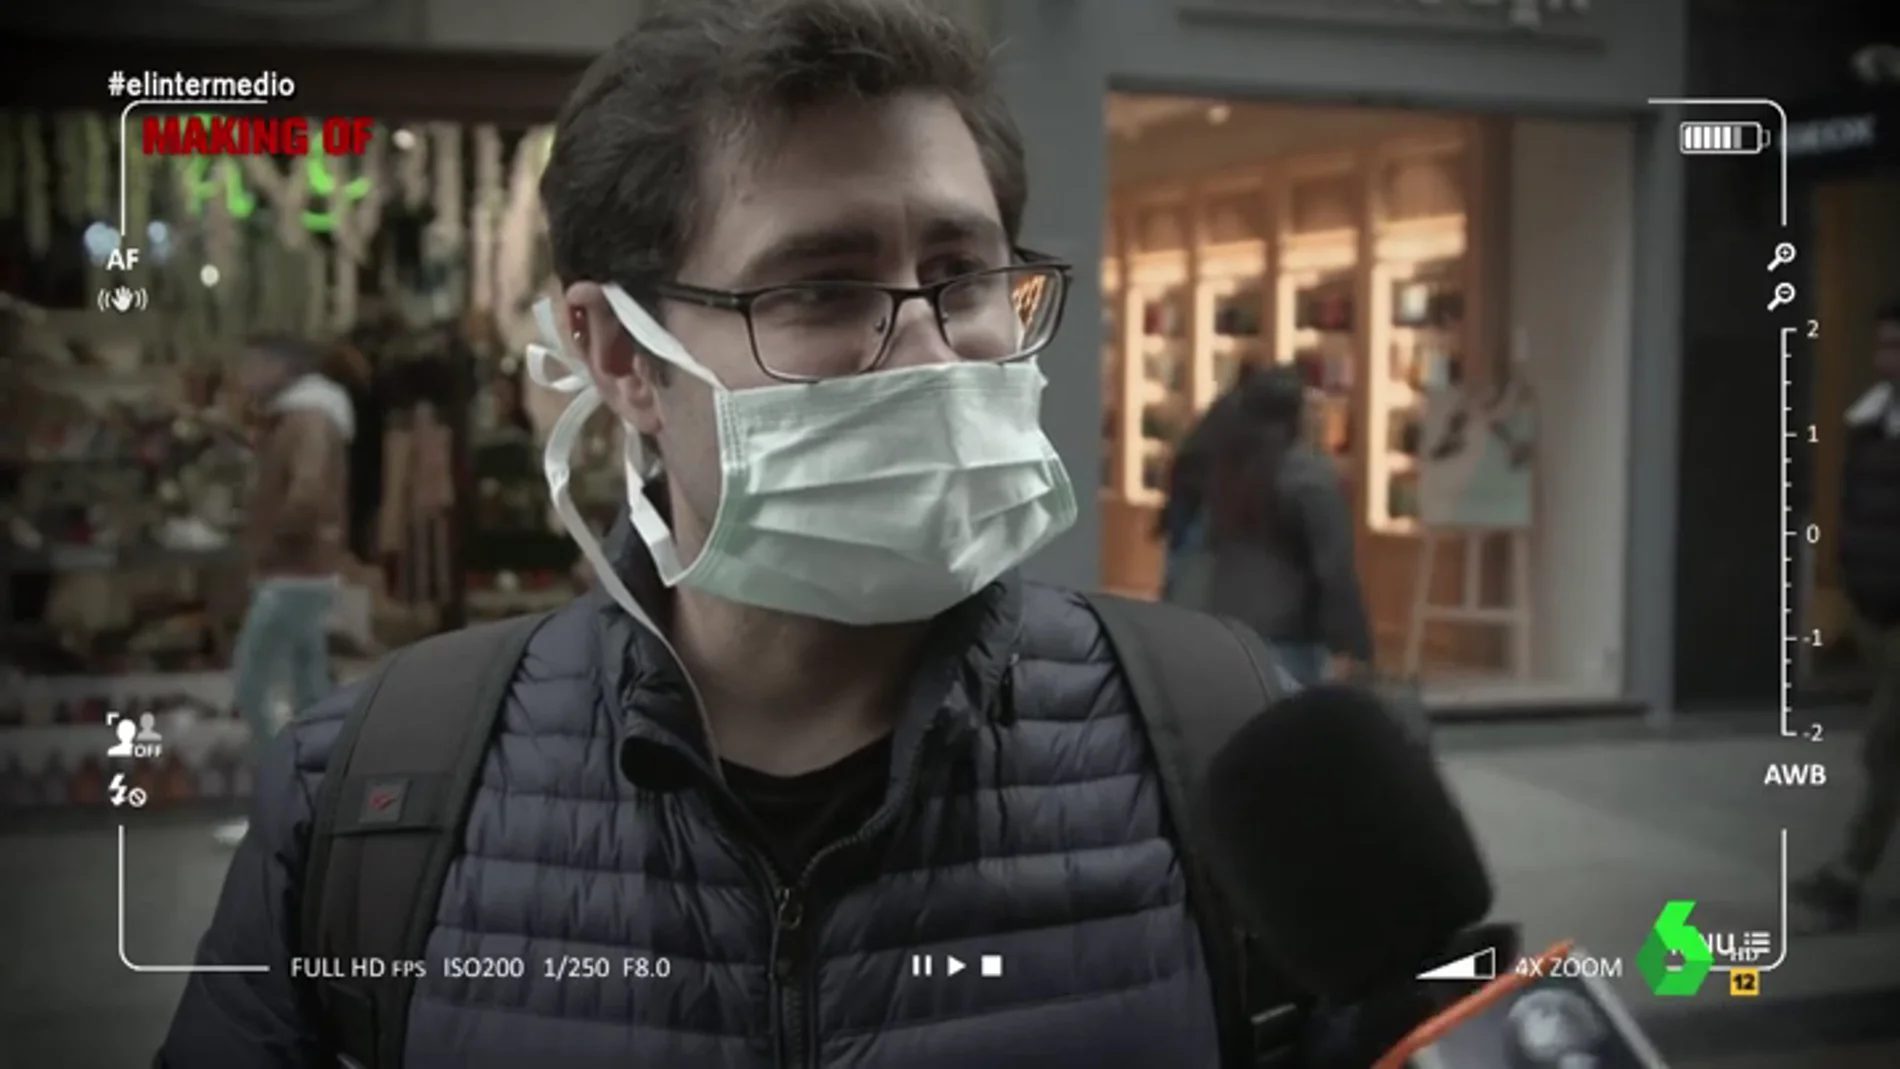 El Intermedio 'capta' los "momentos de desesperación y pánico" de los españoles por el coronavirus